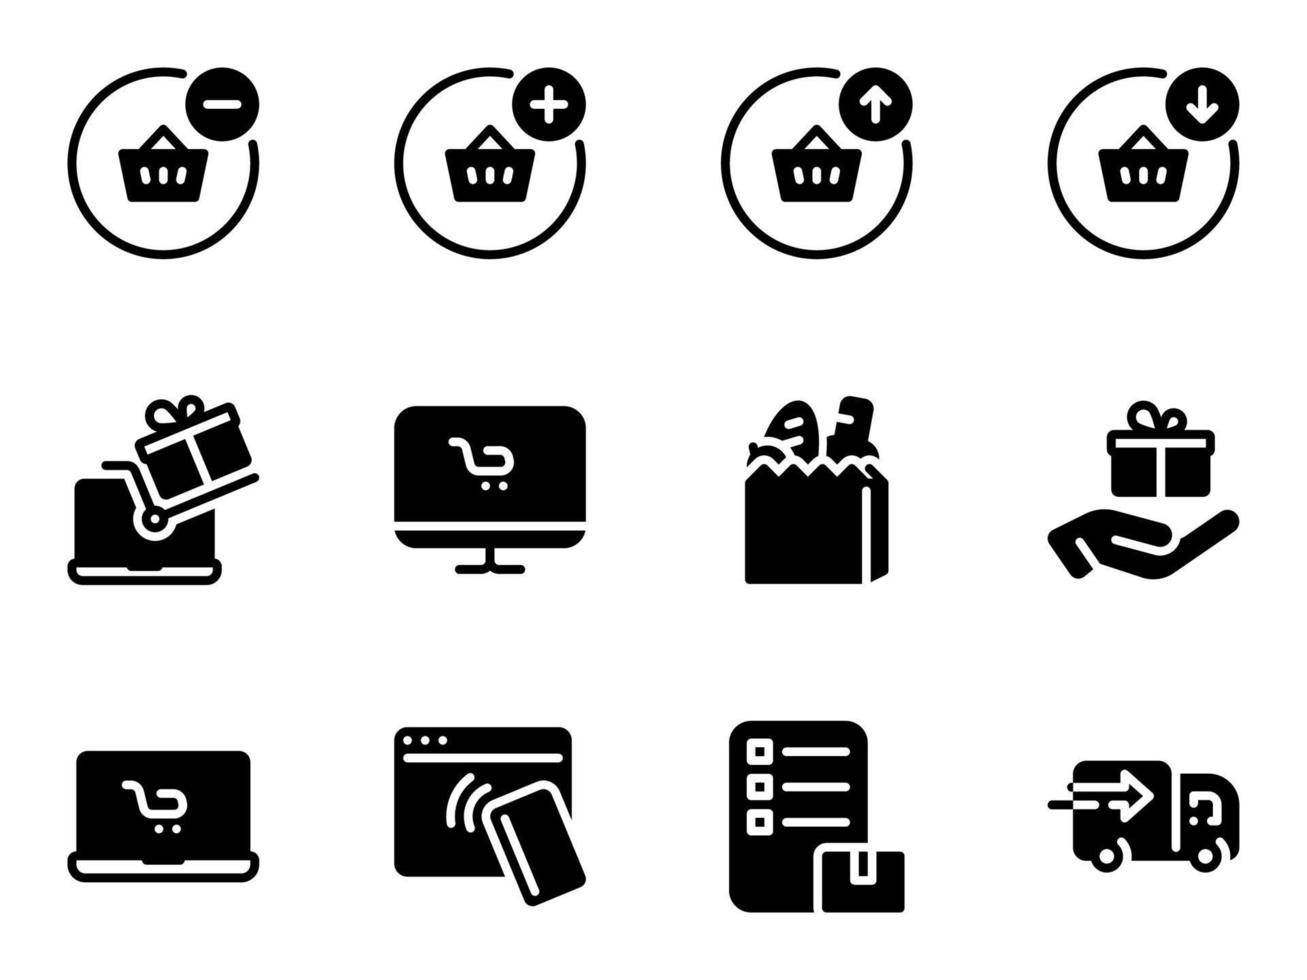 ensemble d'icônes vectorielles noires, isolées sur fond blanc. illustration plate sur un thème acheter, payer, recevoir des marchandises, livraison vecteur